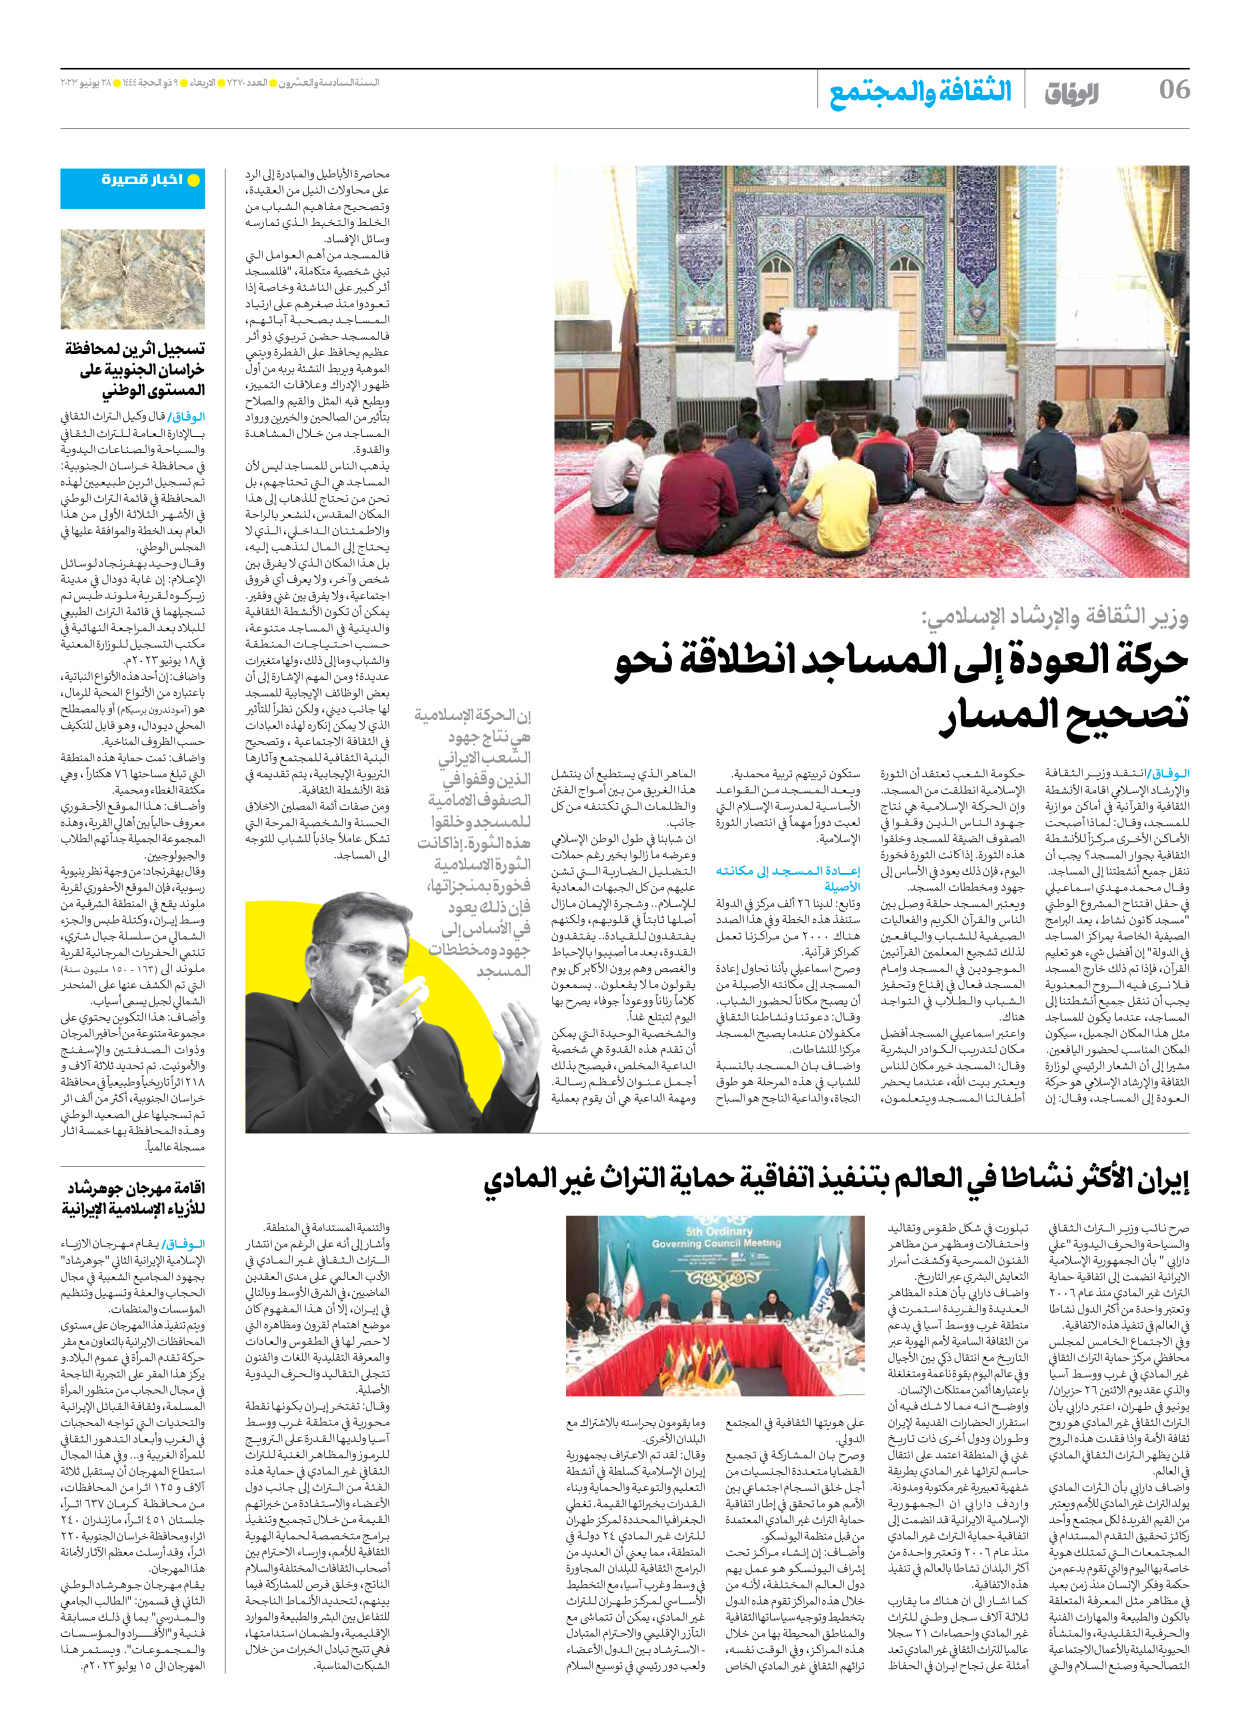 صحیفة ایران الدولیة الوفاق - العدد سبعة آلاف ومائتان وسبعون - ٢٨ يونيو ٢٠٢٣ - الصفحة ٦